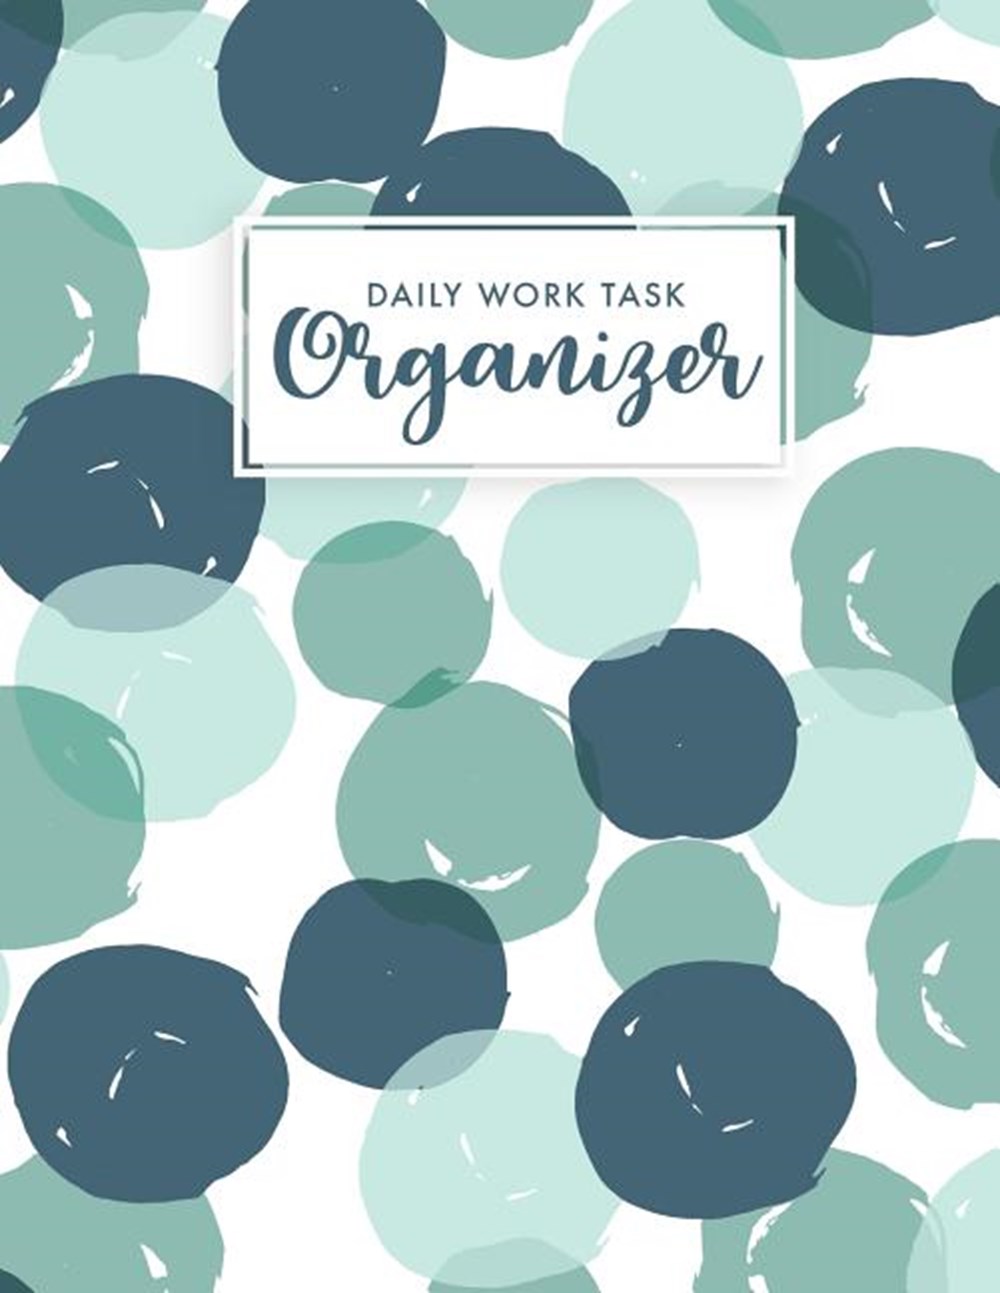 Daily Work Task Organizer Work Day Planner - Organizer Journal Schedule Task - Appointment Book Dail